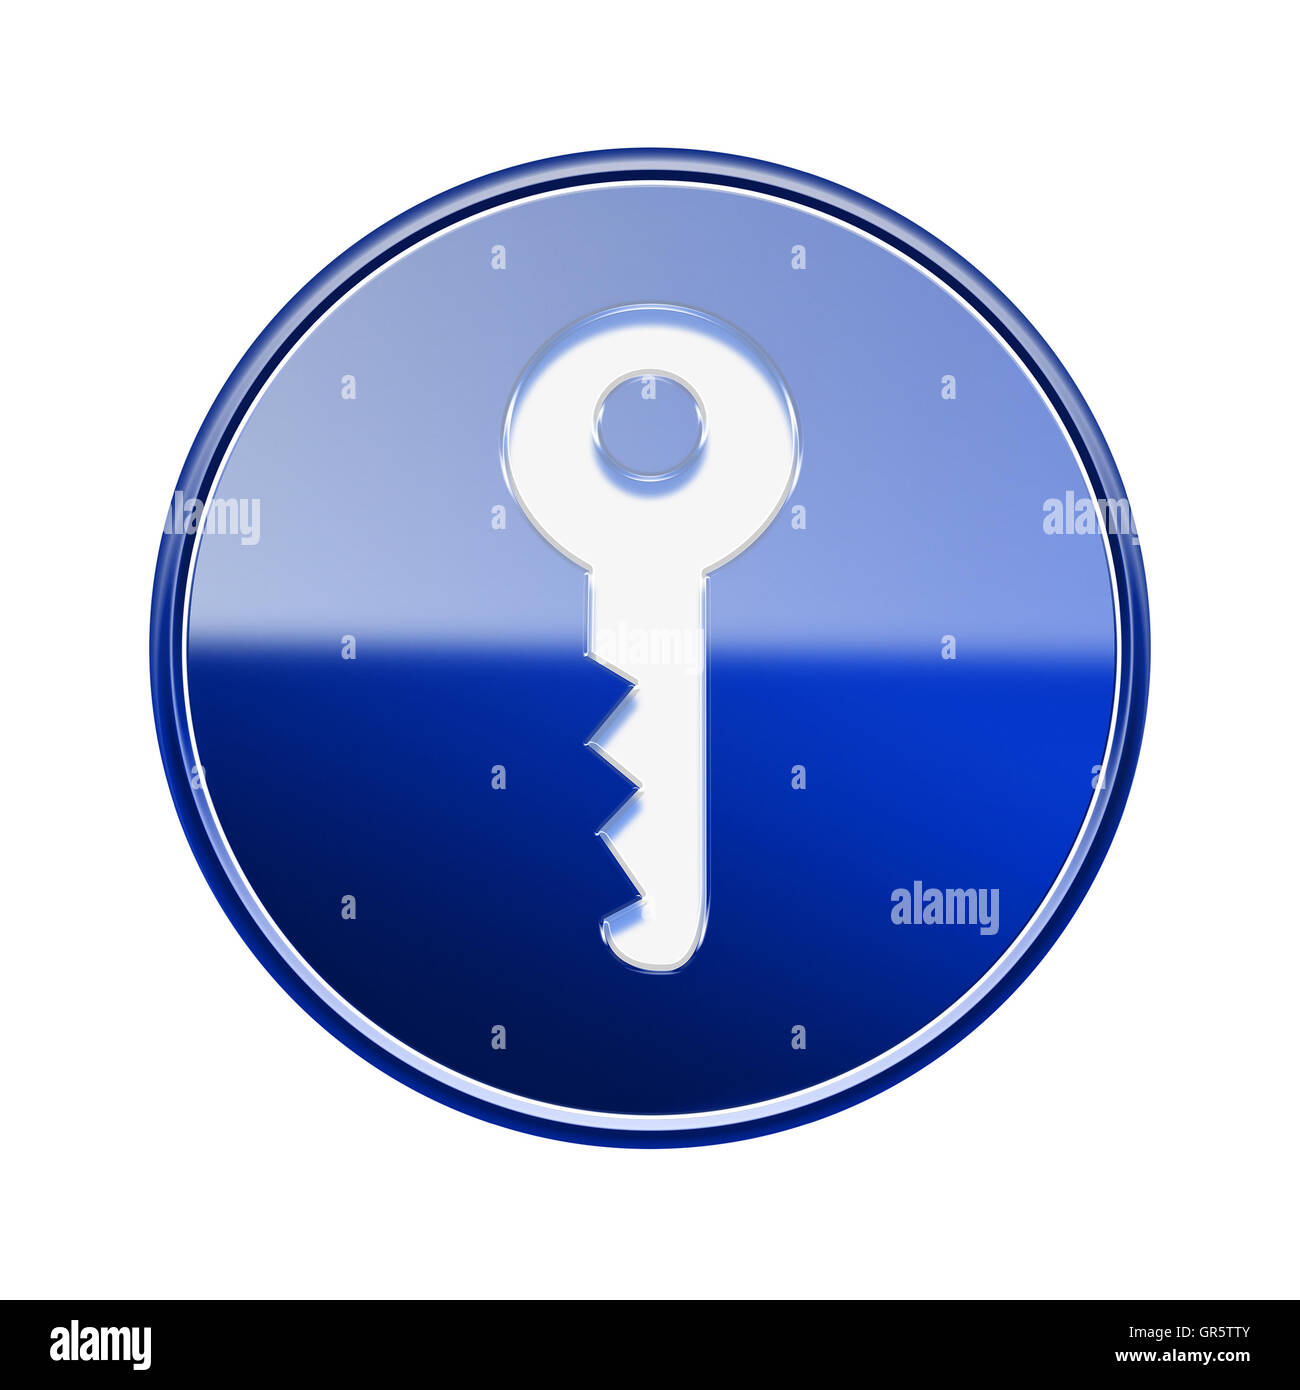 Key icon glossy blue, isolated on white background Stock Photo